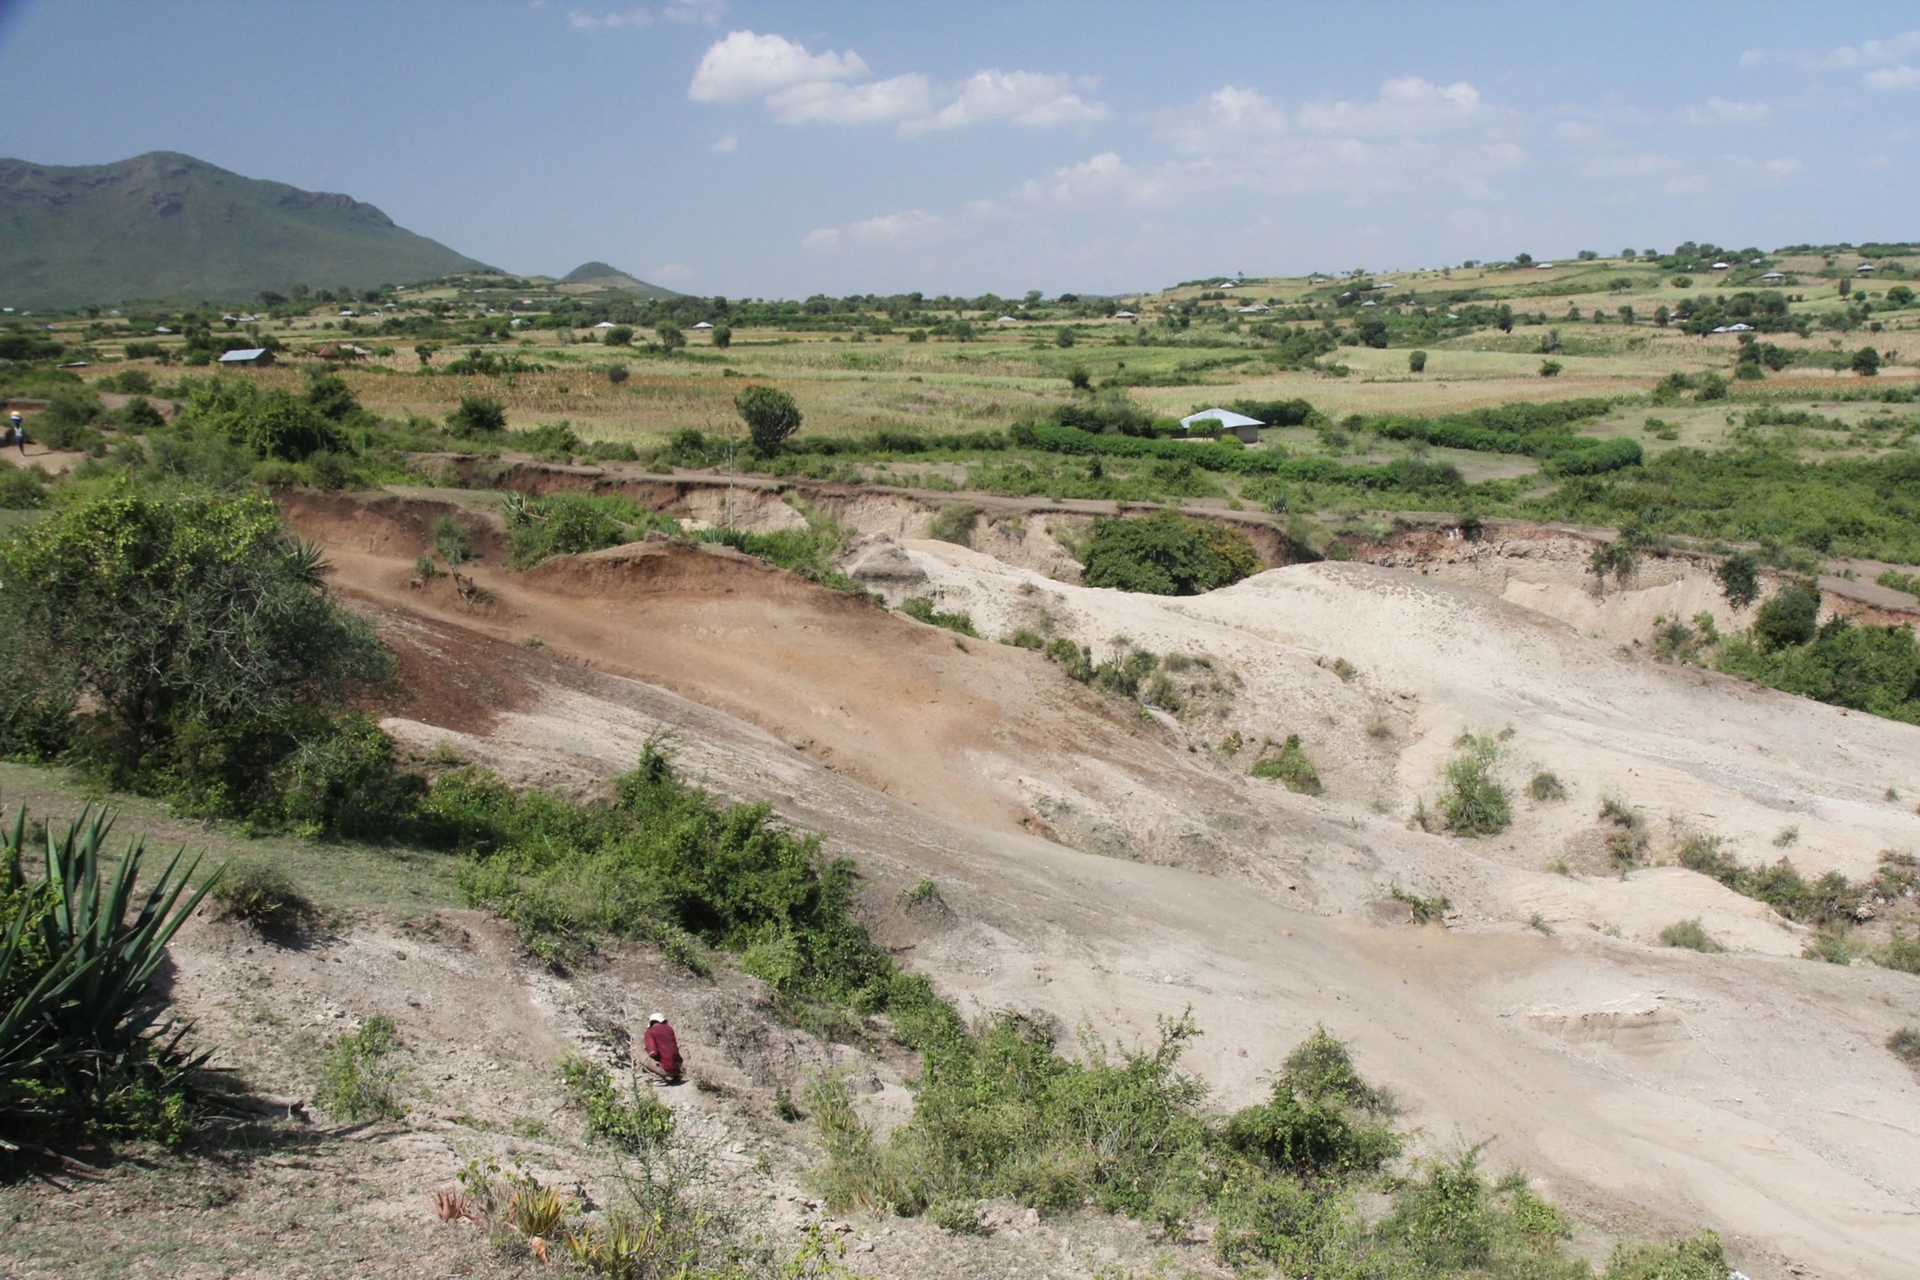 科學家在肯亞西南部的內楊加遺址發掘出超過300件石器（照片攝於2014年，早於發掘日期）。PHOTOGRAPH BY T.W. PLUMMER, HOMA PENINSULA PALEOANTHROPOLOGY PROJECT